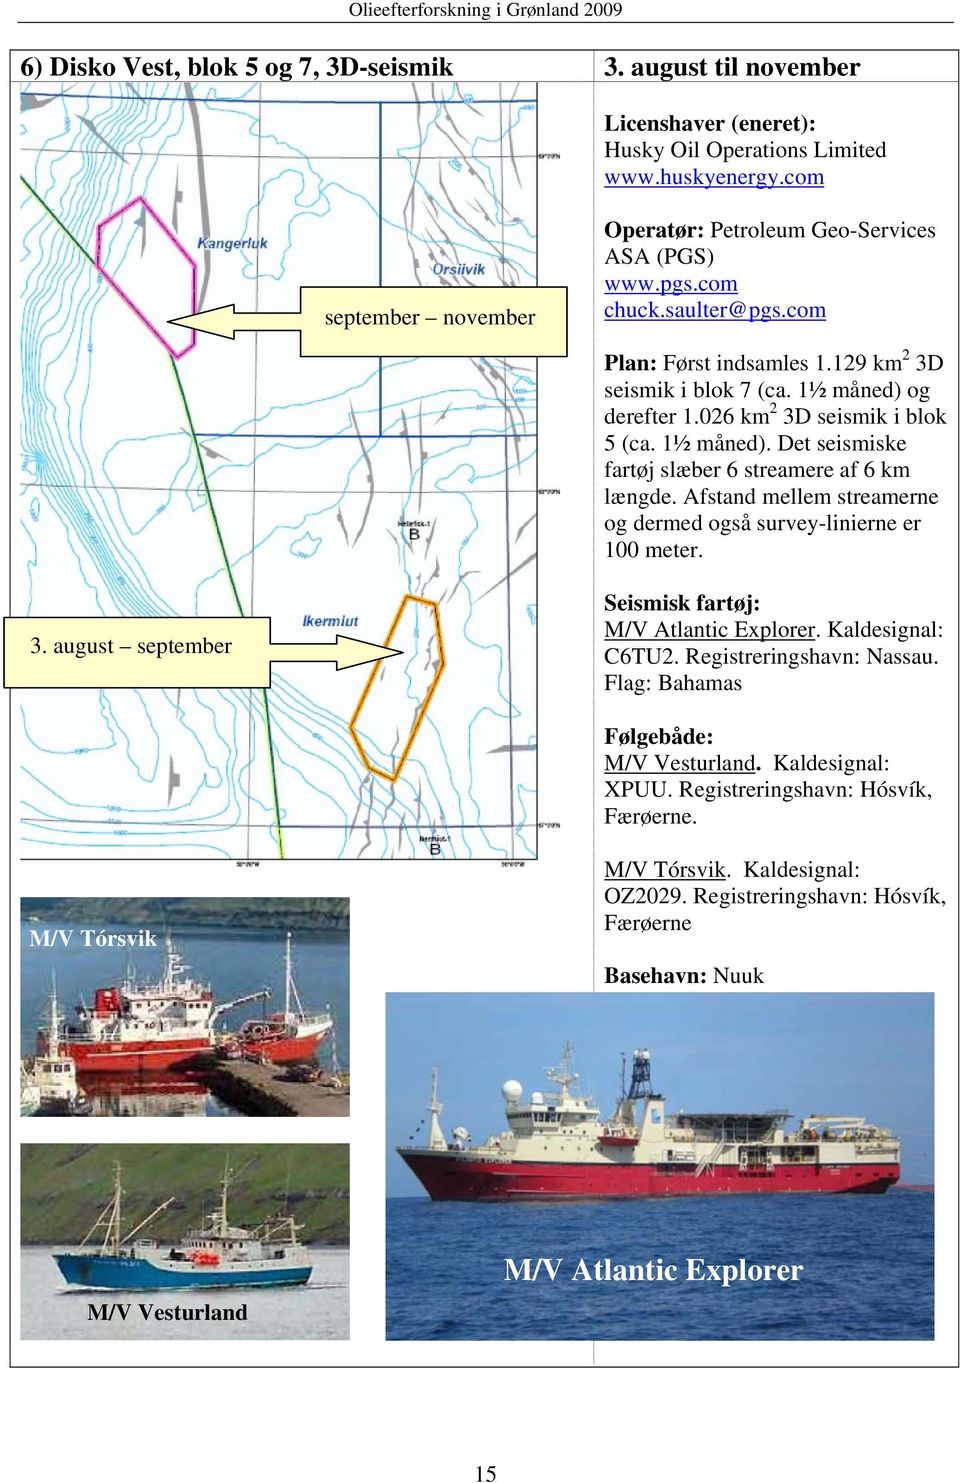 Afstand mellem streamerne og dermed også survey-linierne er 100 meter. 3. august september Seismisk fartøj: M/V Atlantic Explorer. Kaldesignal: C6TU2. Registreringshavn: Nassau.